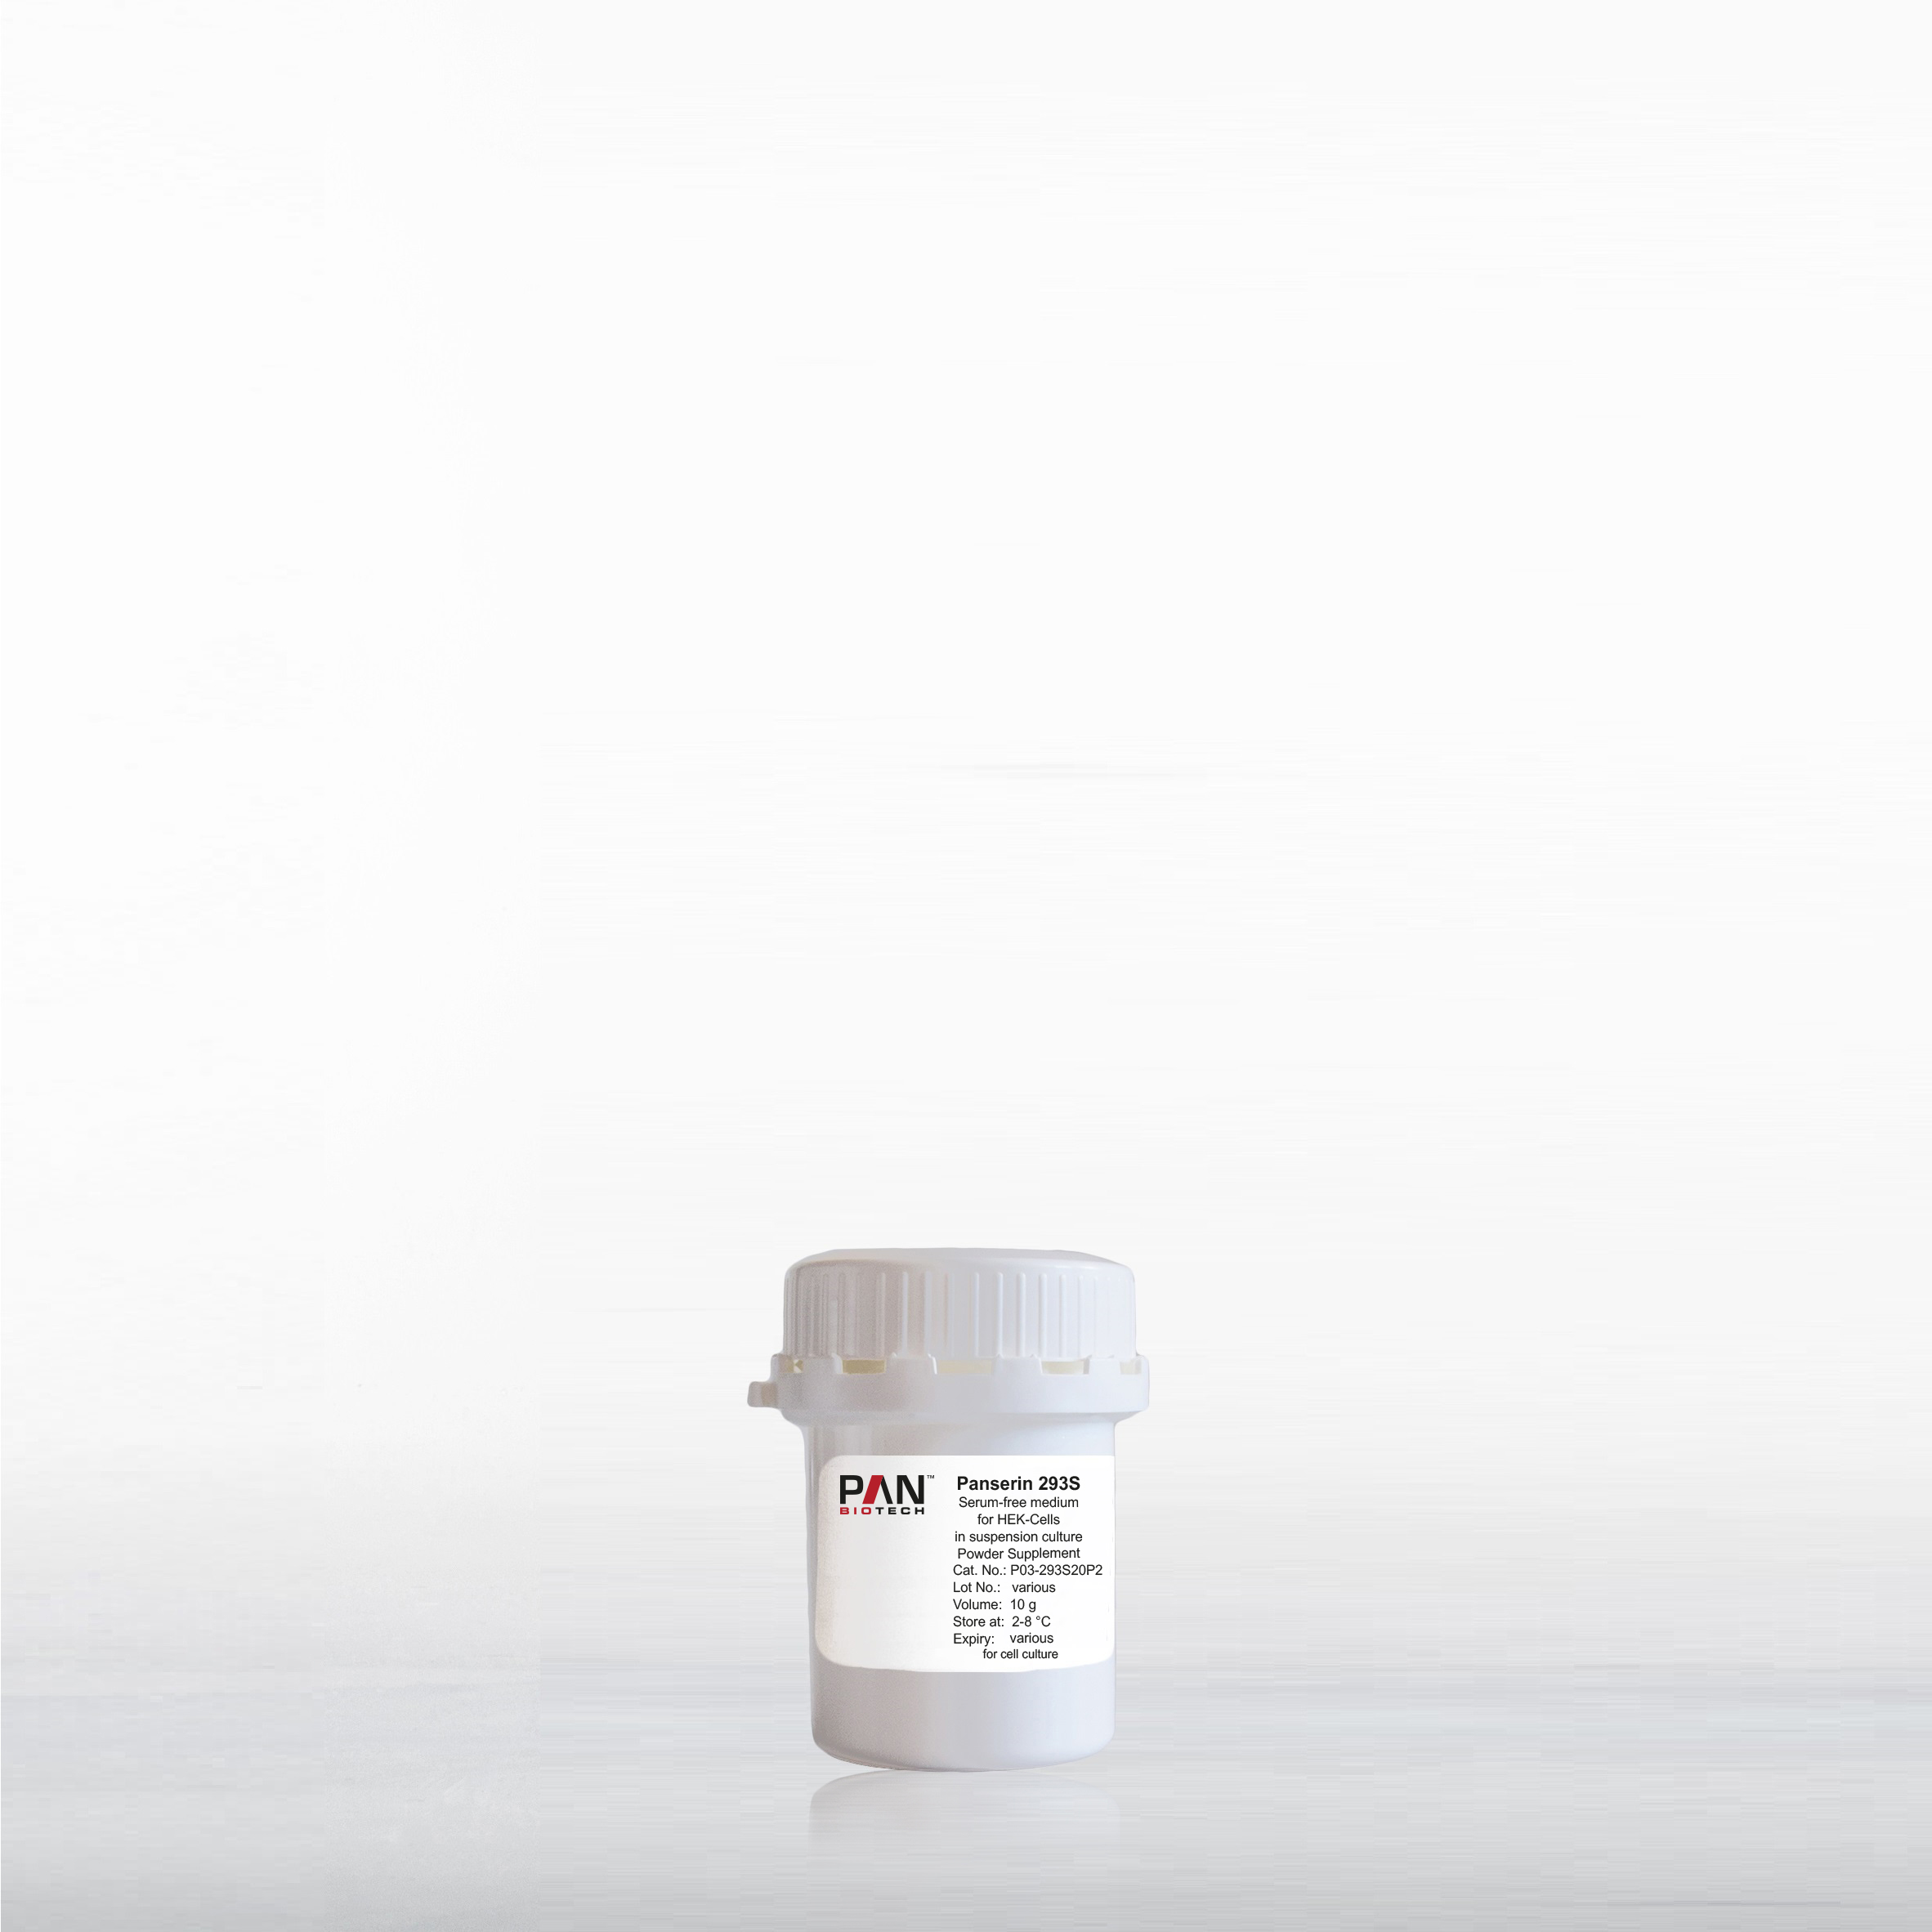 Panserin 293S, Serum-free medium for HEK-Cells in suspension culture, Powder supplement